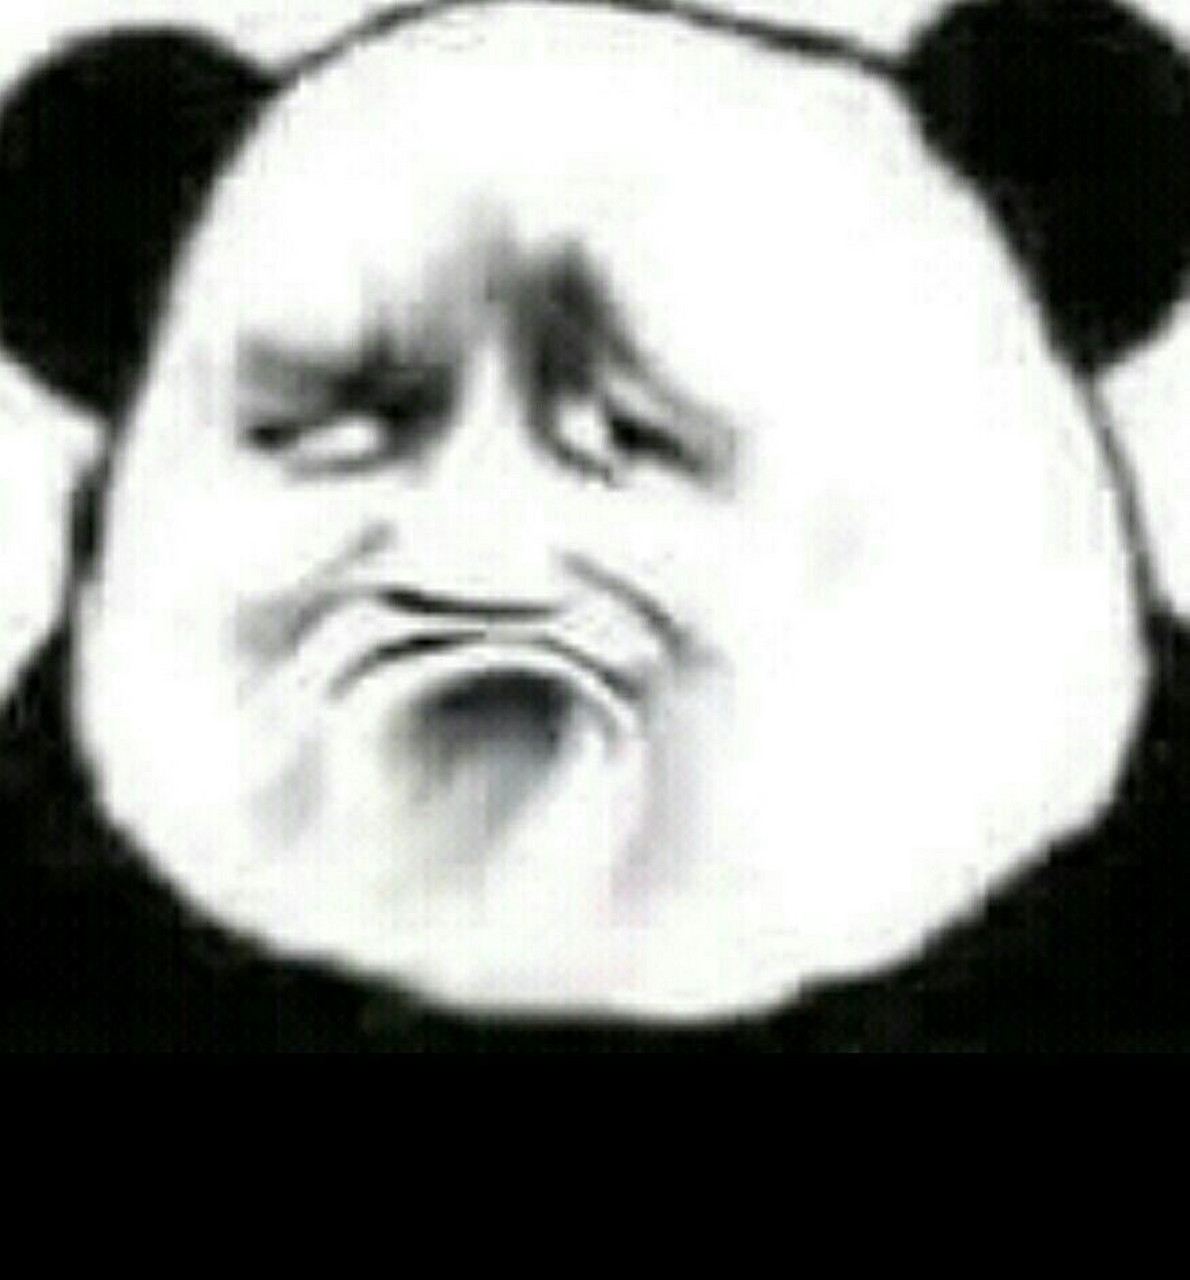 人脸熊猫表情包图片